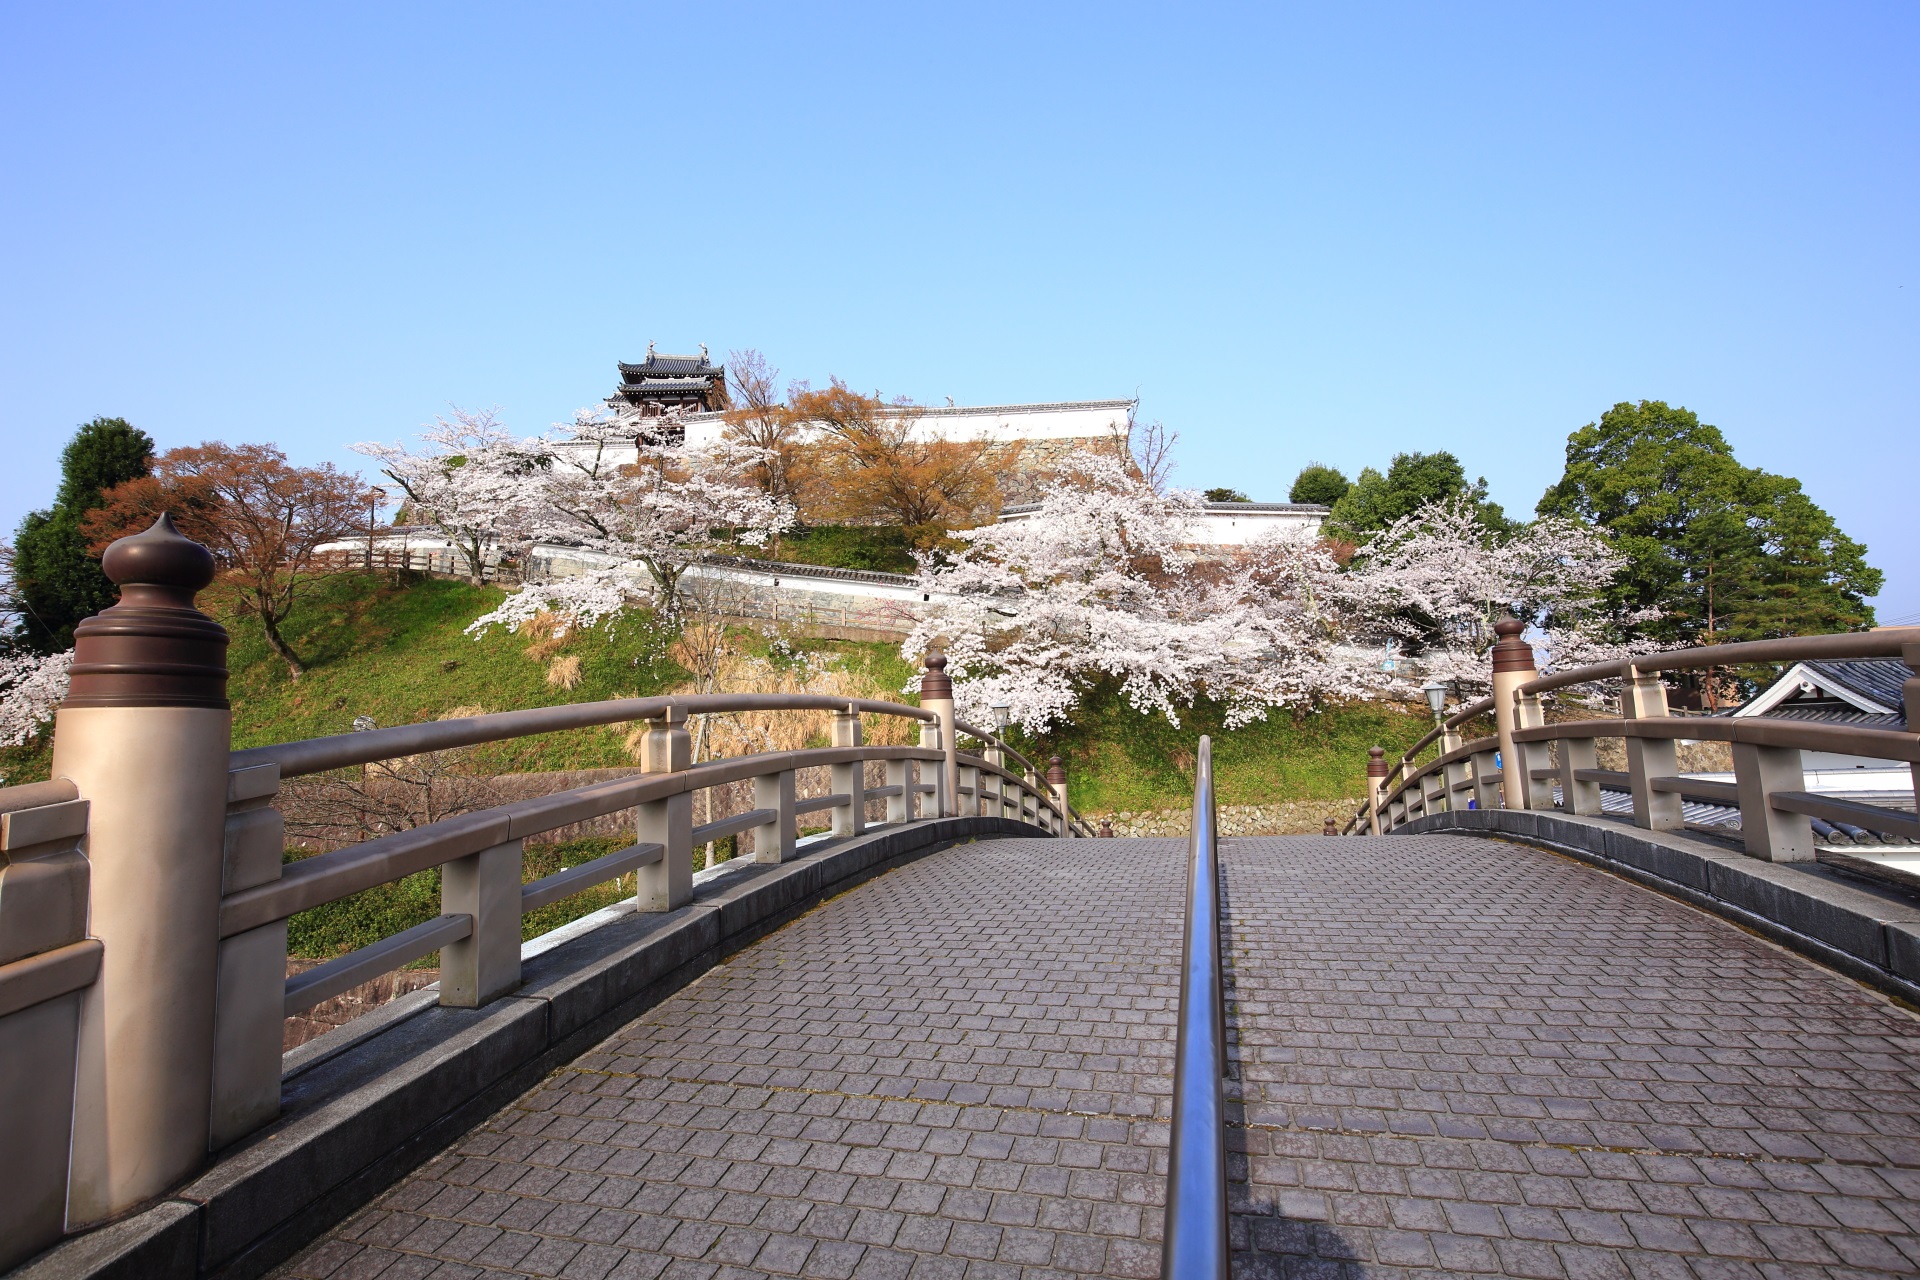 昇龍橋の向こうに佇む福知山城と桜